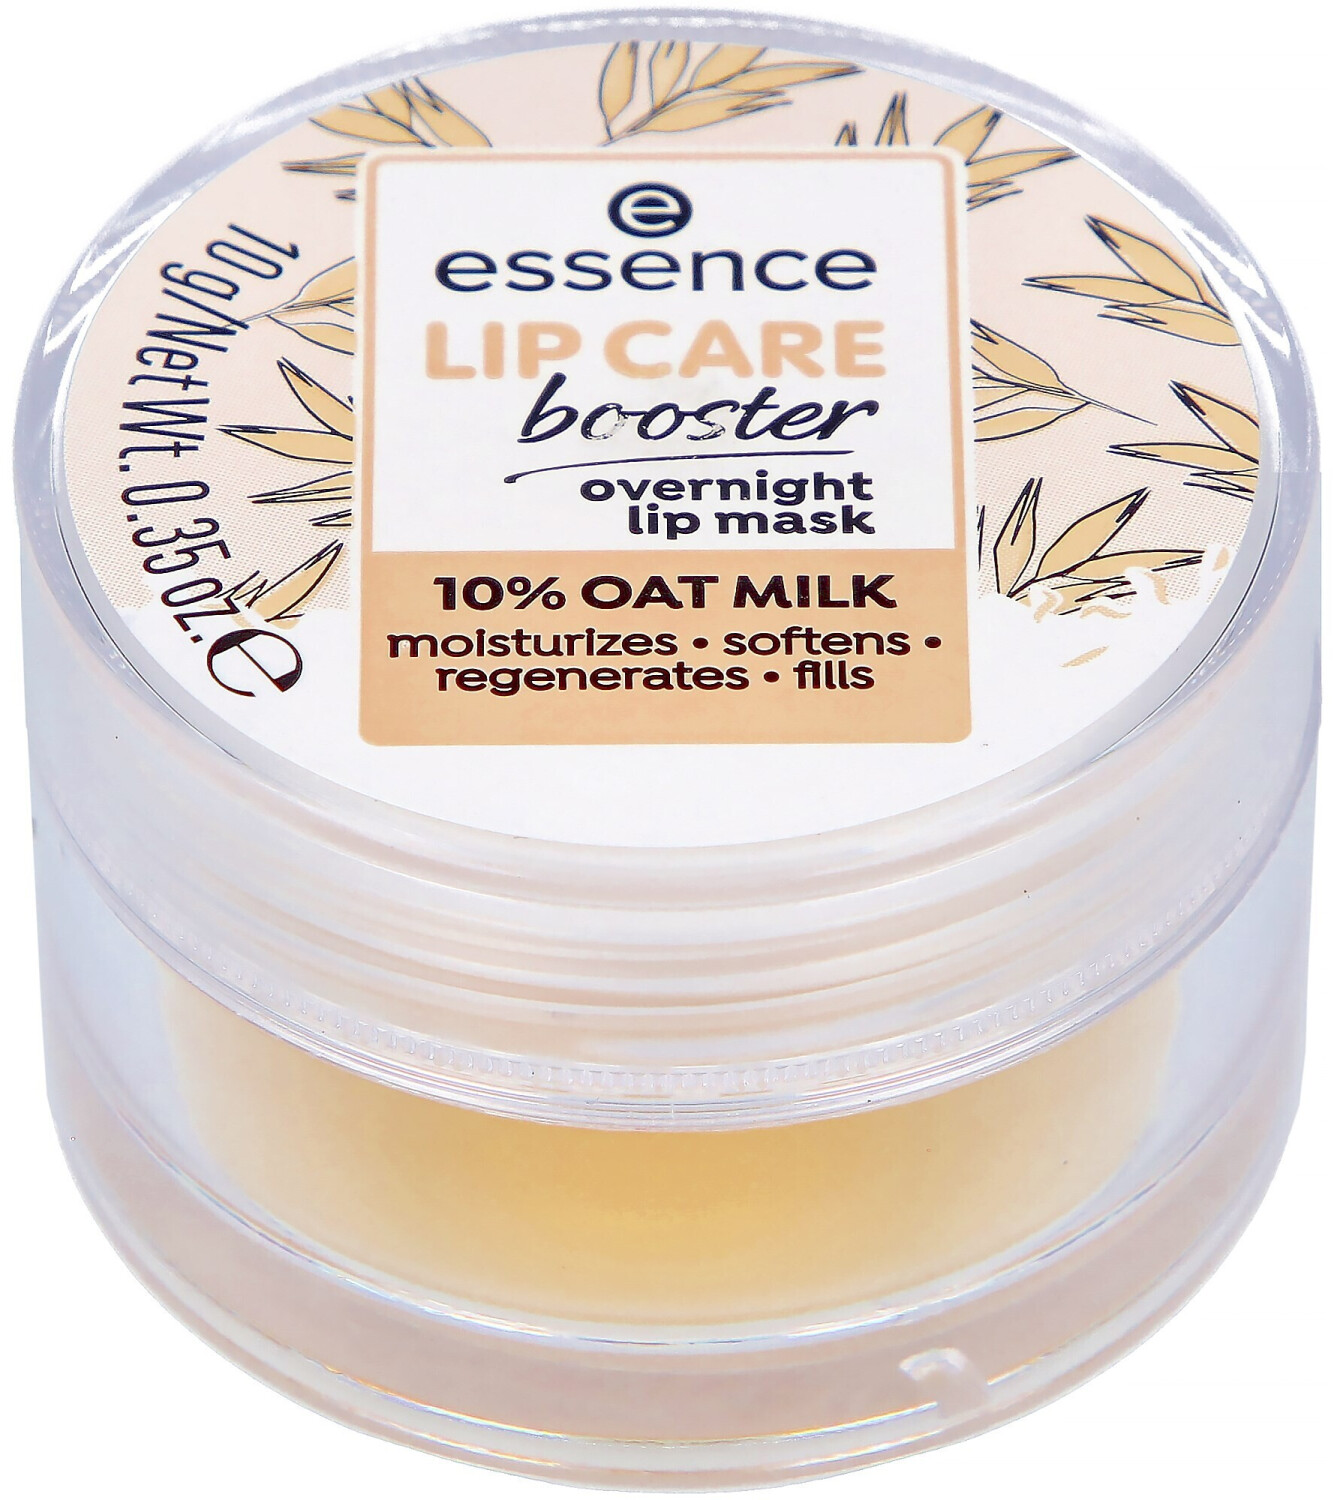 Essence Lip Care Booster € idealo offerte Overnight a (oggi) | e 3,73 Lip Mask (10g) su Migliori prezzi